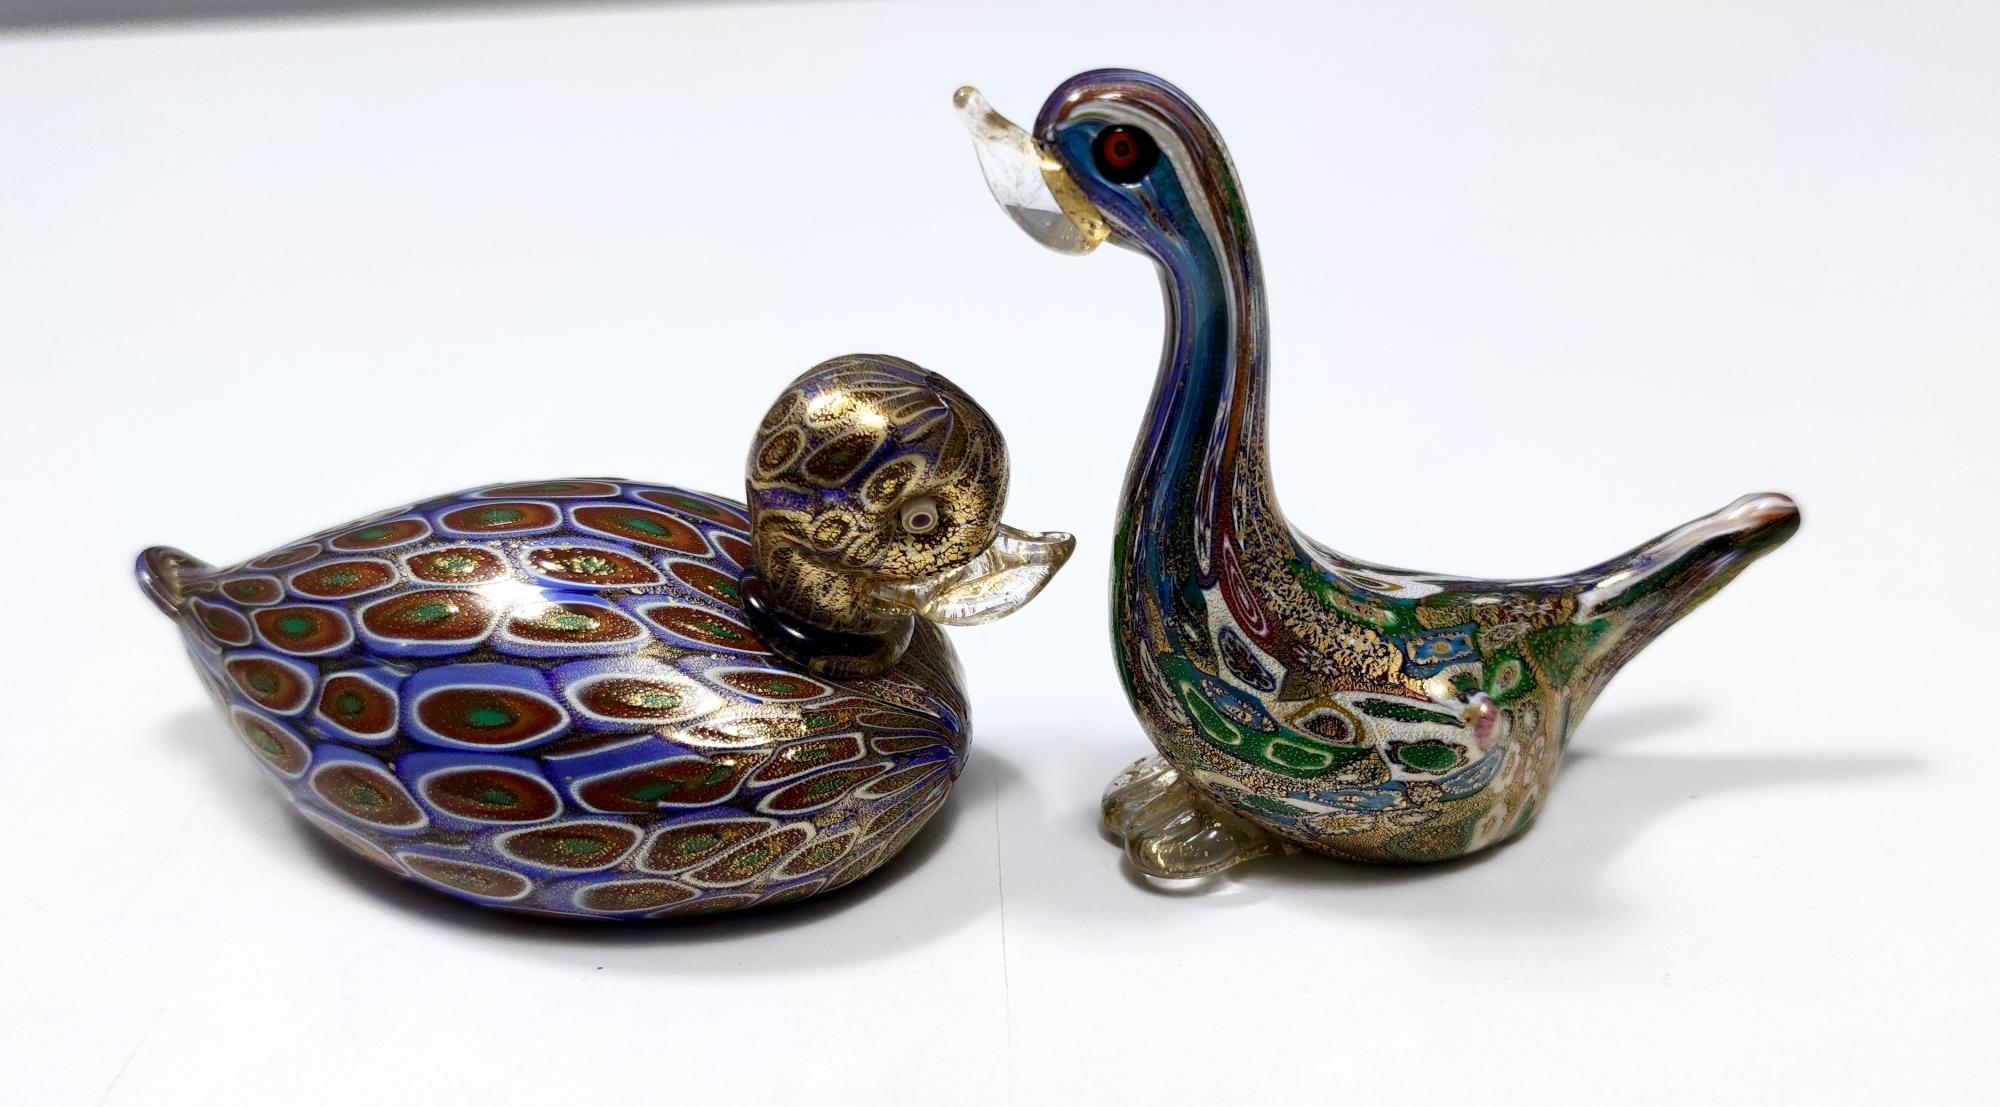 Hergestellt in Italien, 1990er Jahre.
Diese Ente ist aus Murano-Glas mit Blattgold und Murrinen gefertigt.
Es hat seine Originalunterschrift und ist in einem ausgezeichneten Originalzustand.

Maße: Breite 13 cm
Tiefe 7 cm
Höhe 5.5 cm.

Bestellen Sie